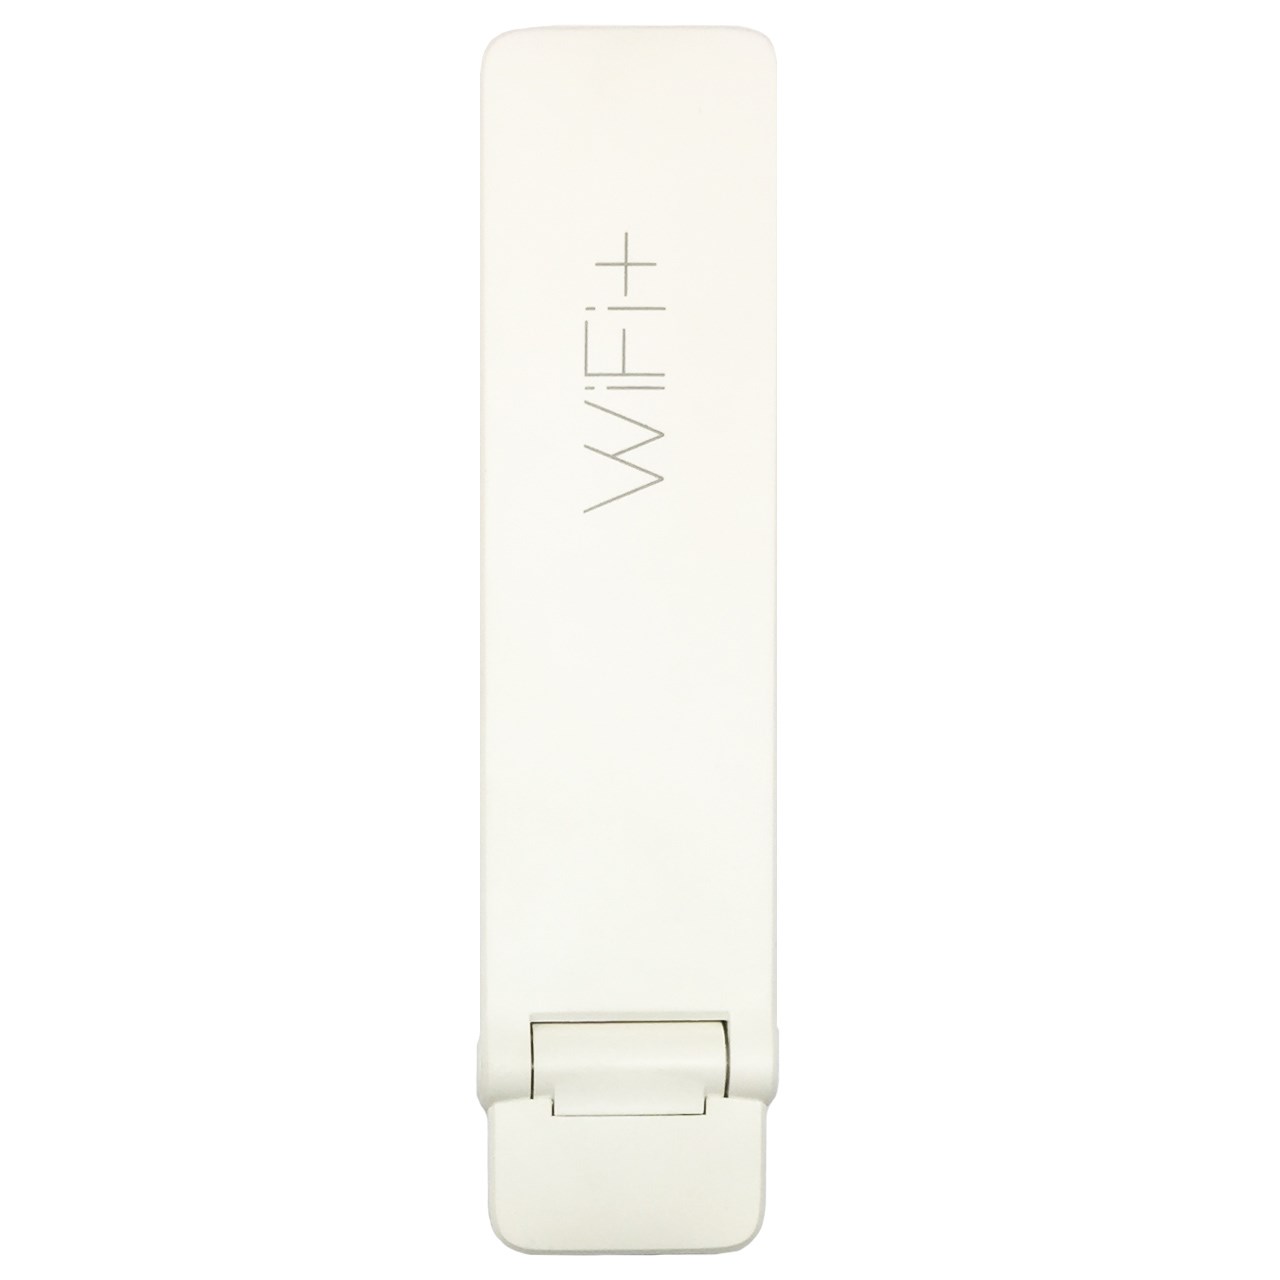 تقویت کننده WiFi شیائومی مدل Mi WiFi 2